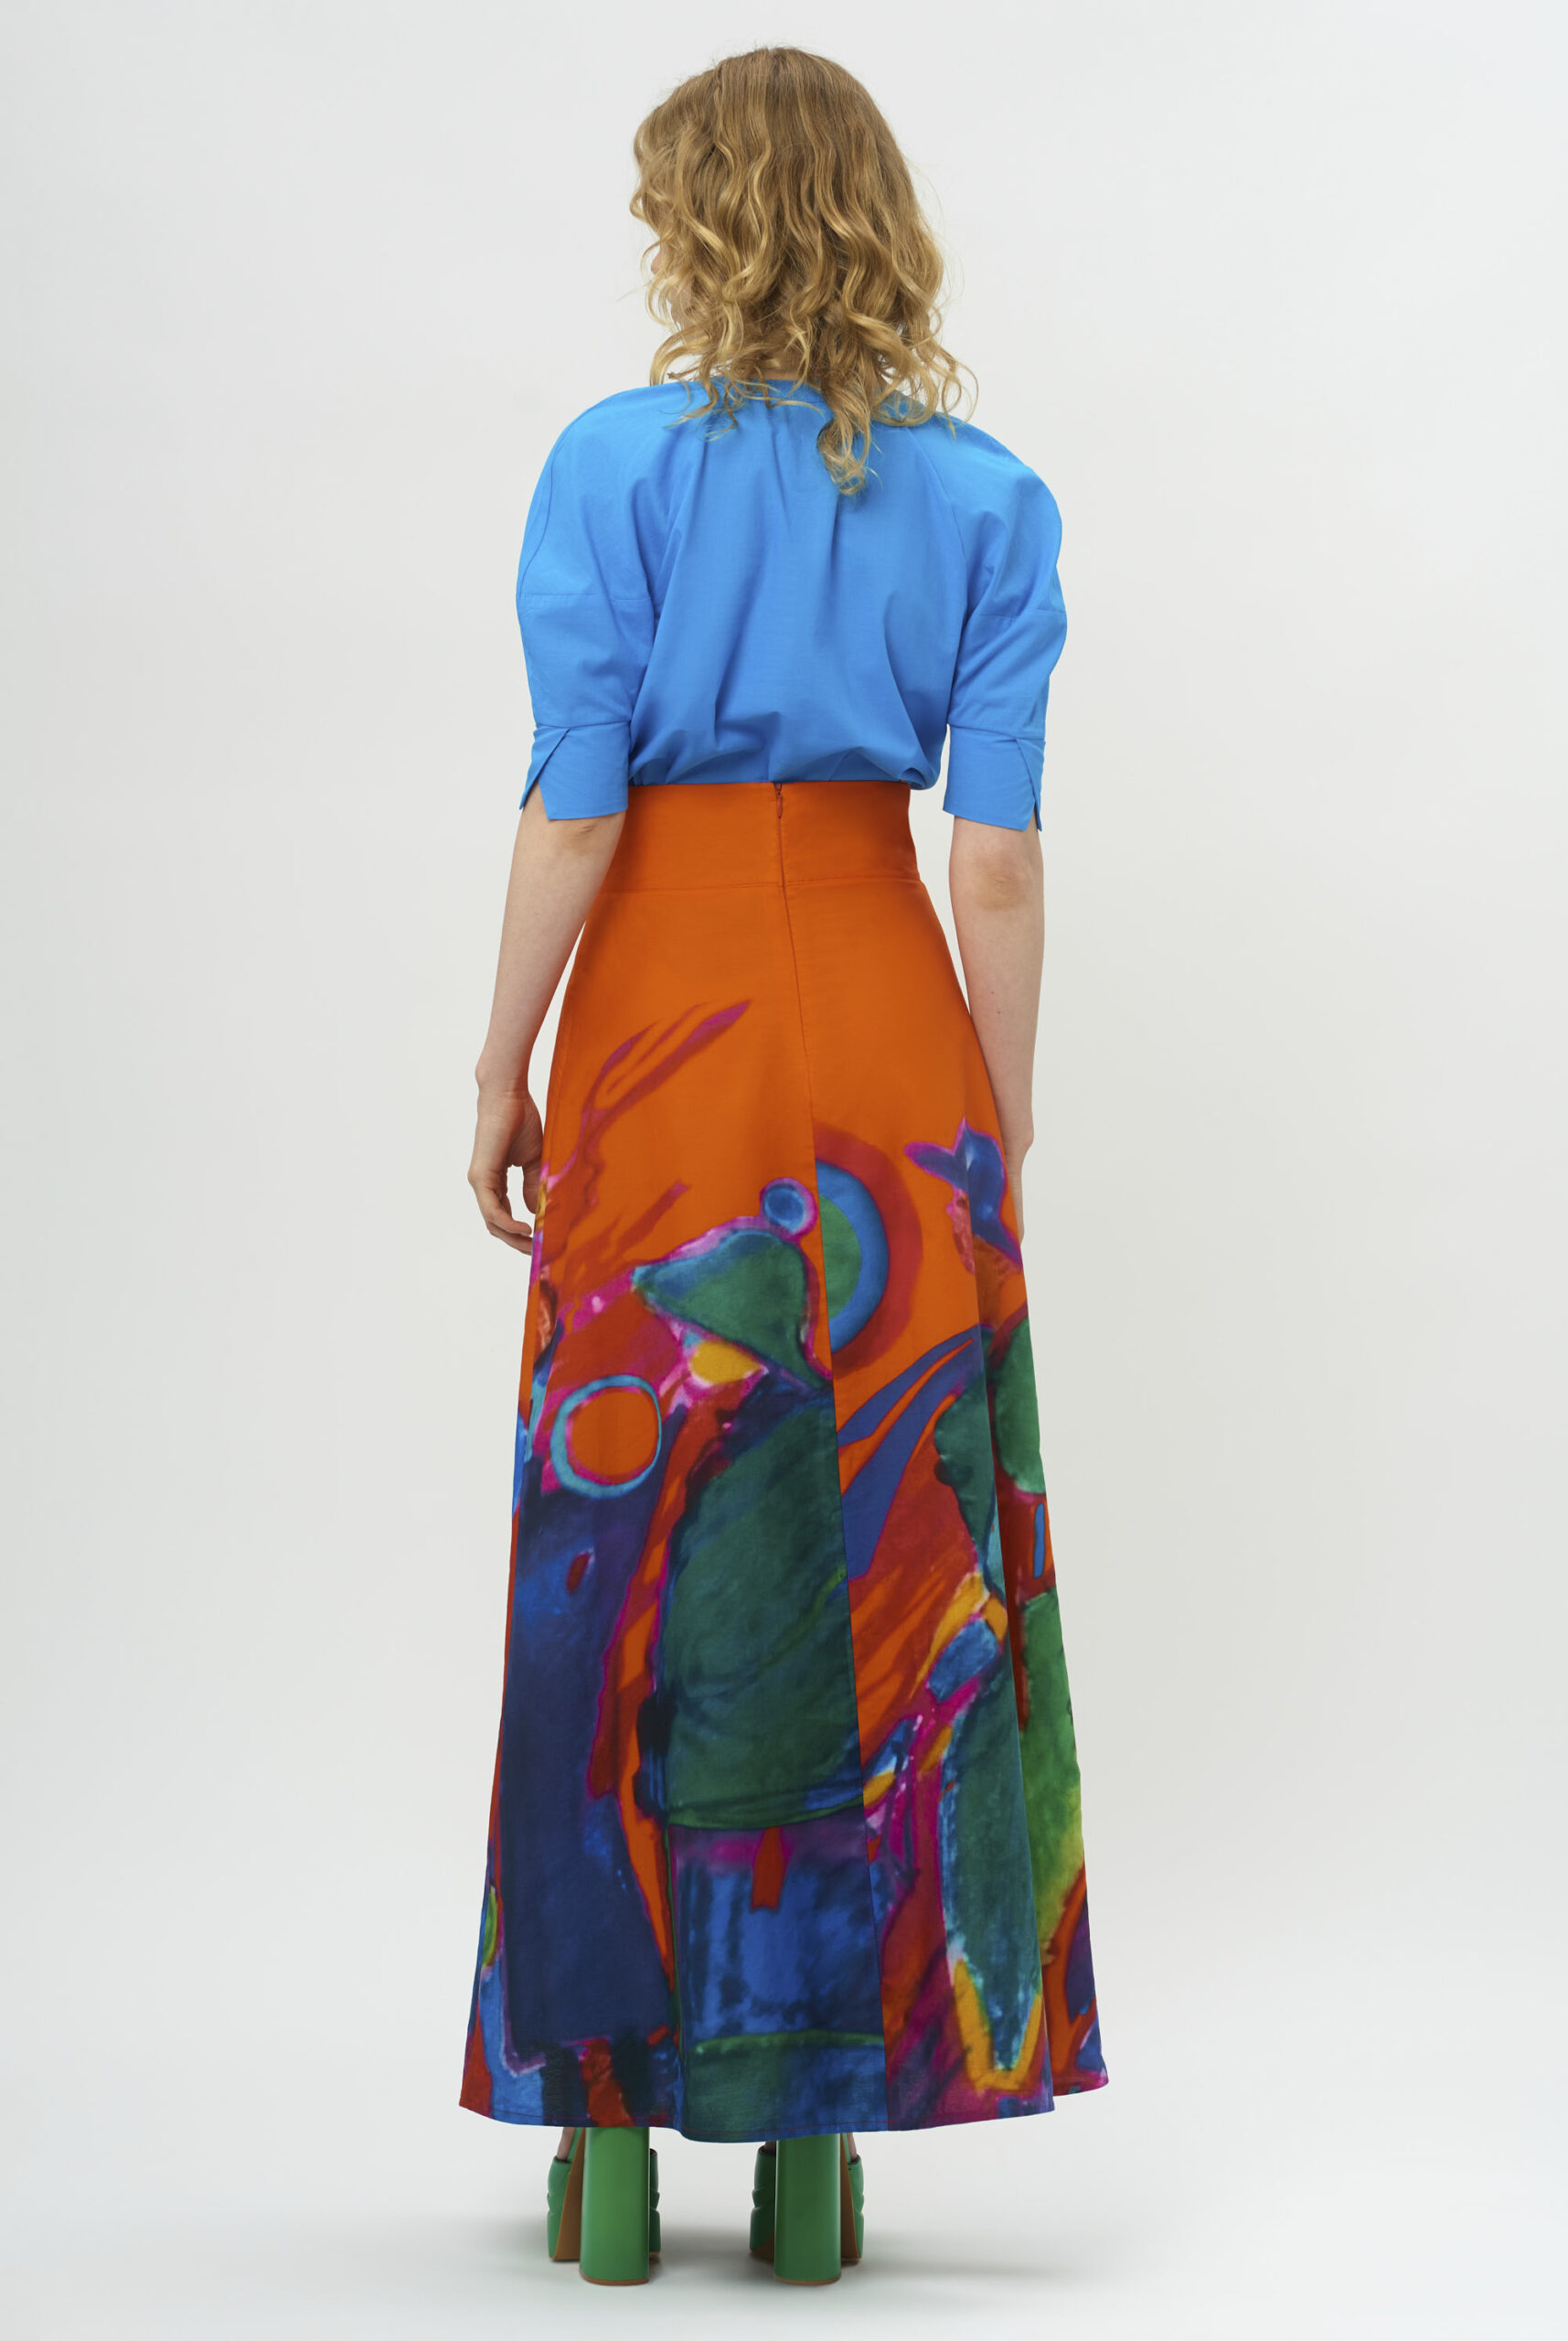 ekstrawagancka spódnica, kolorowa, malowana, print, artystka, Małgorzata Czerniawska, wygodna, oryginalna, na lato, na zimę, podszewka, pomarańczowa, ze wzorami